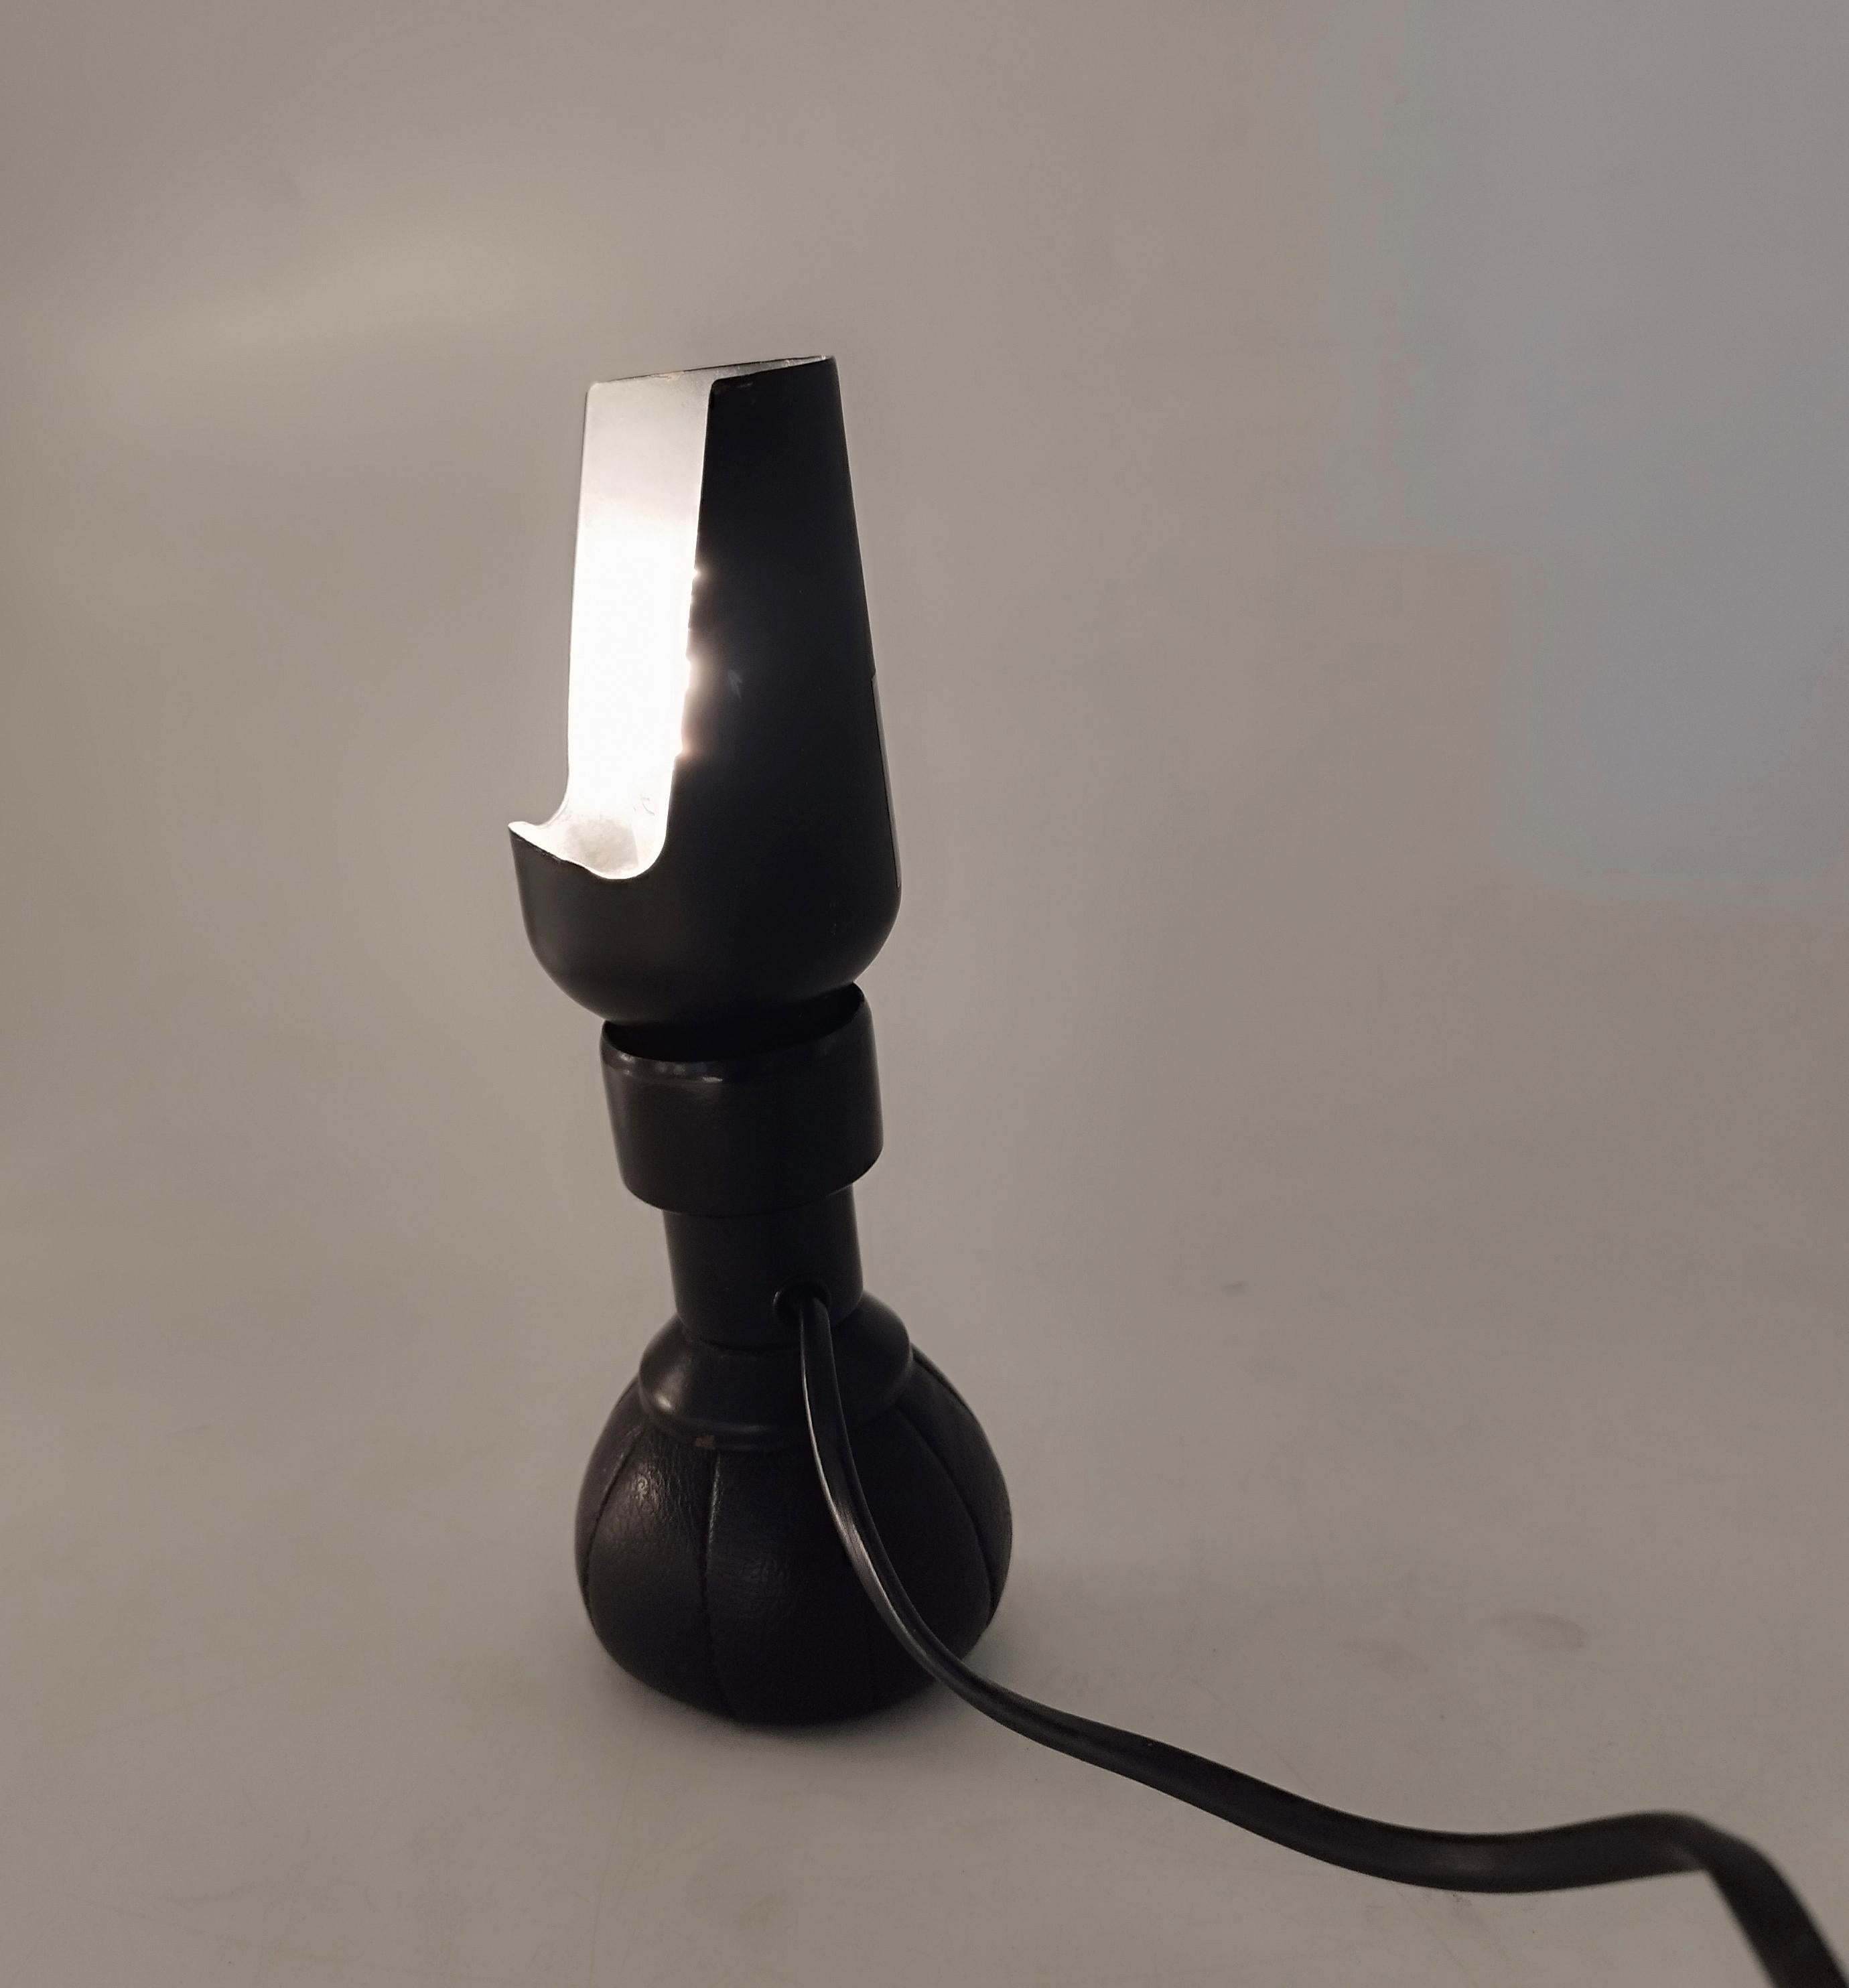 Schwarze Tischlampe Modell P600 von Gino Sarfatti für Arteluce, Italien, 1960er Jahre (Aluminium) im Angebot